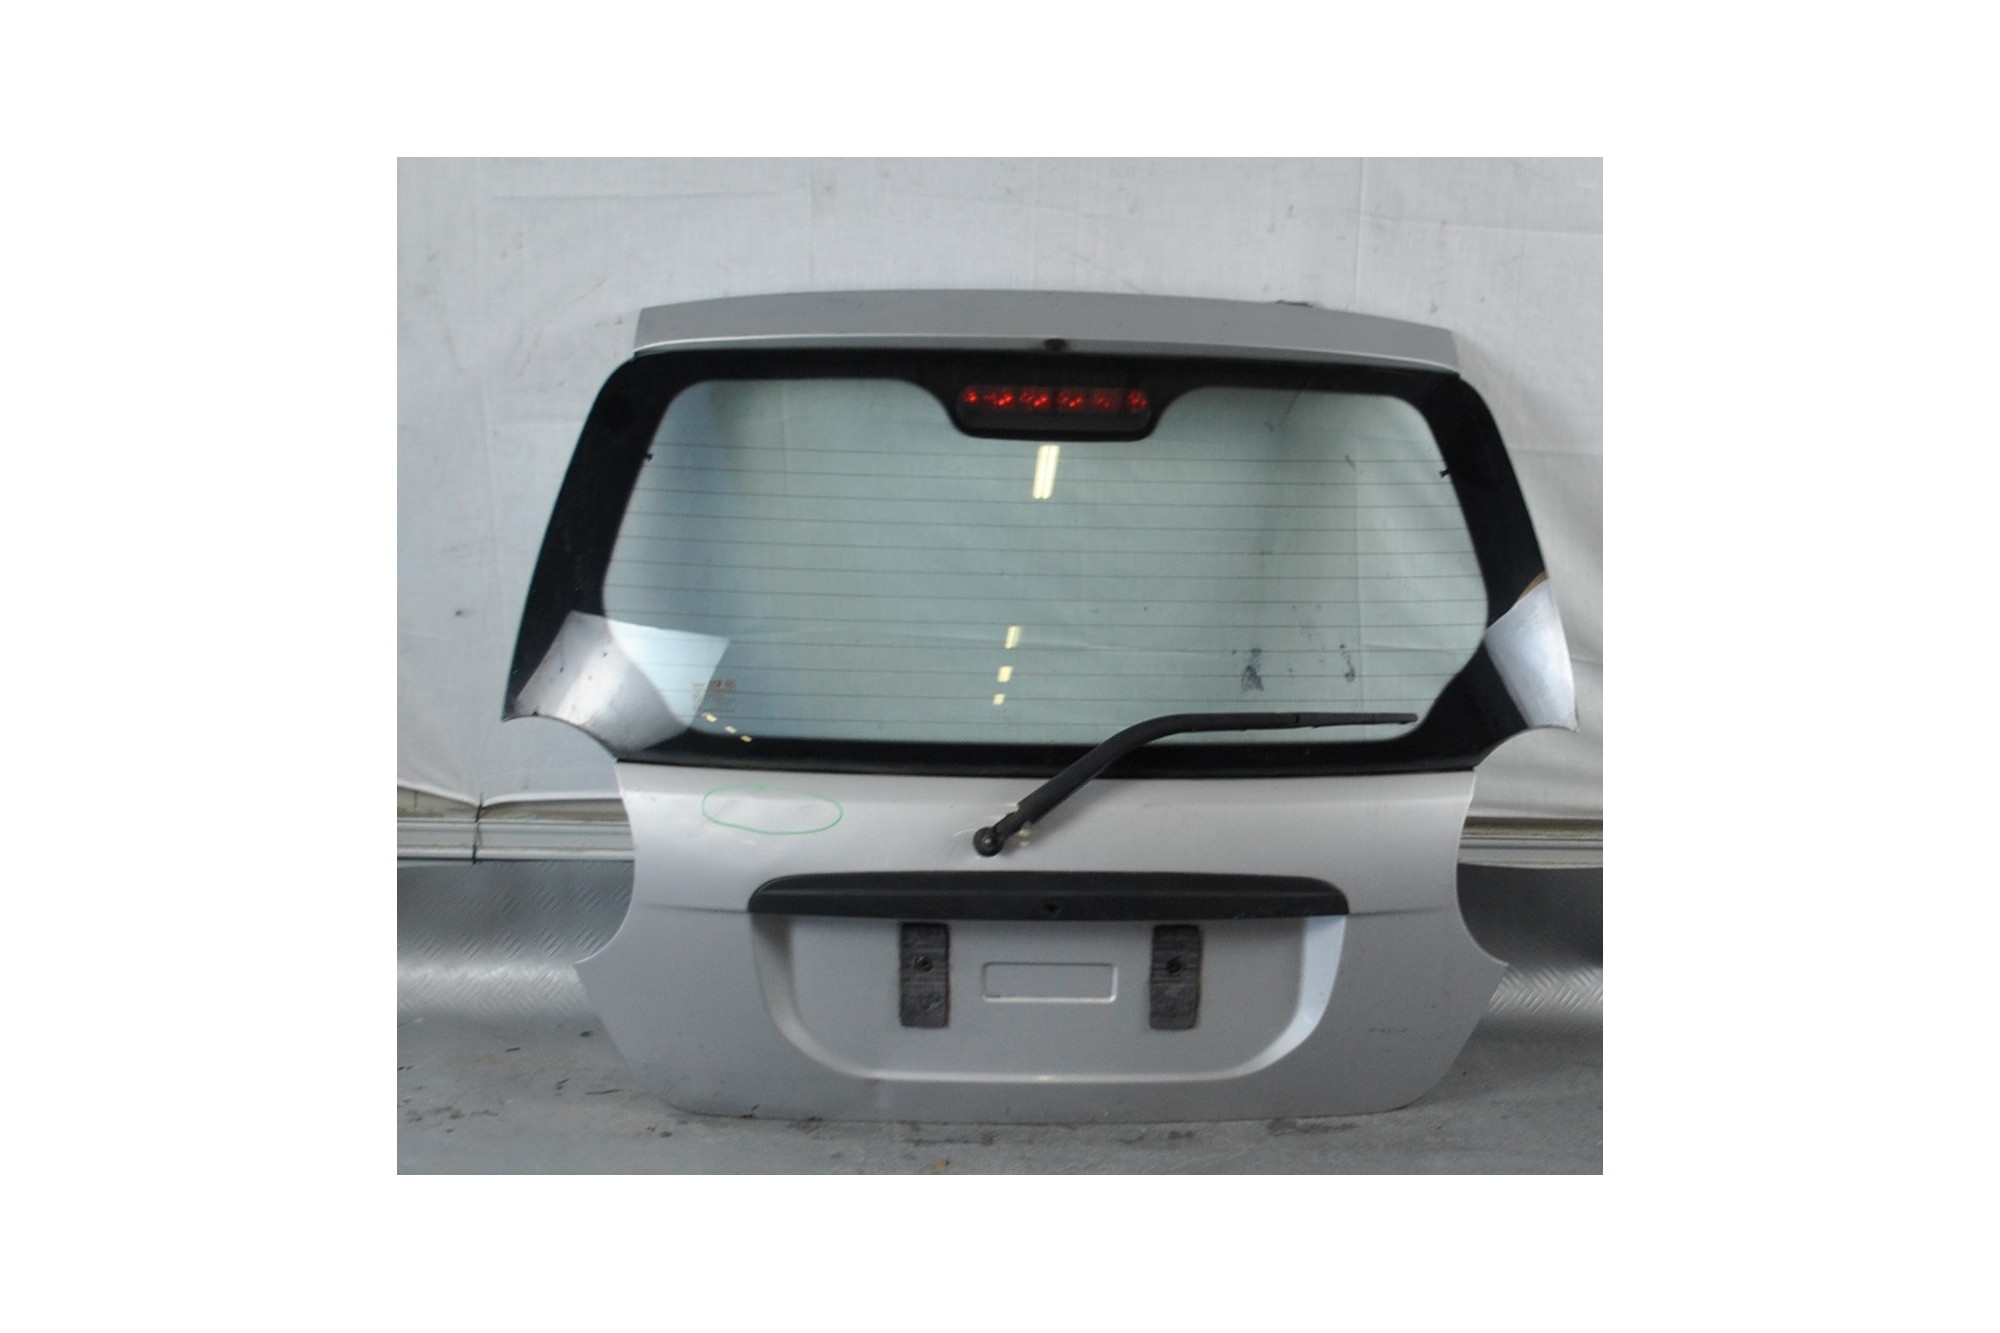 Portellone bagagliaio posteriore Chevrolet Matiz dal 2005 al 2010  2411111178706